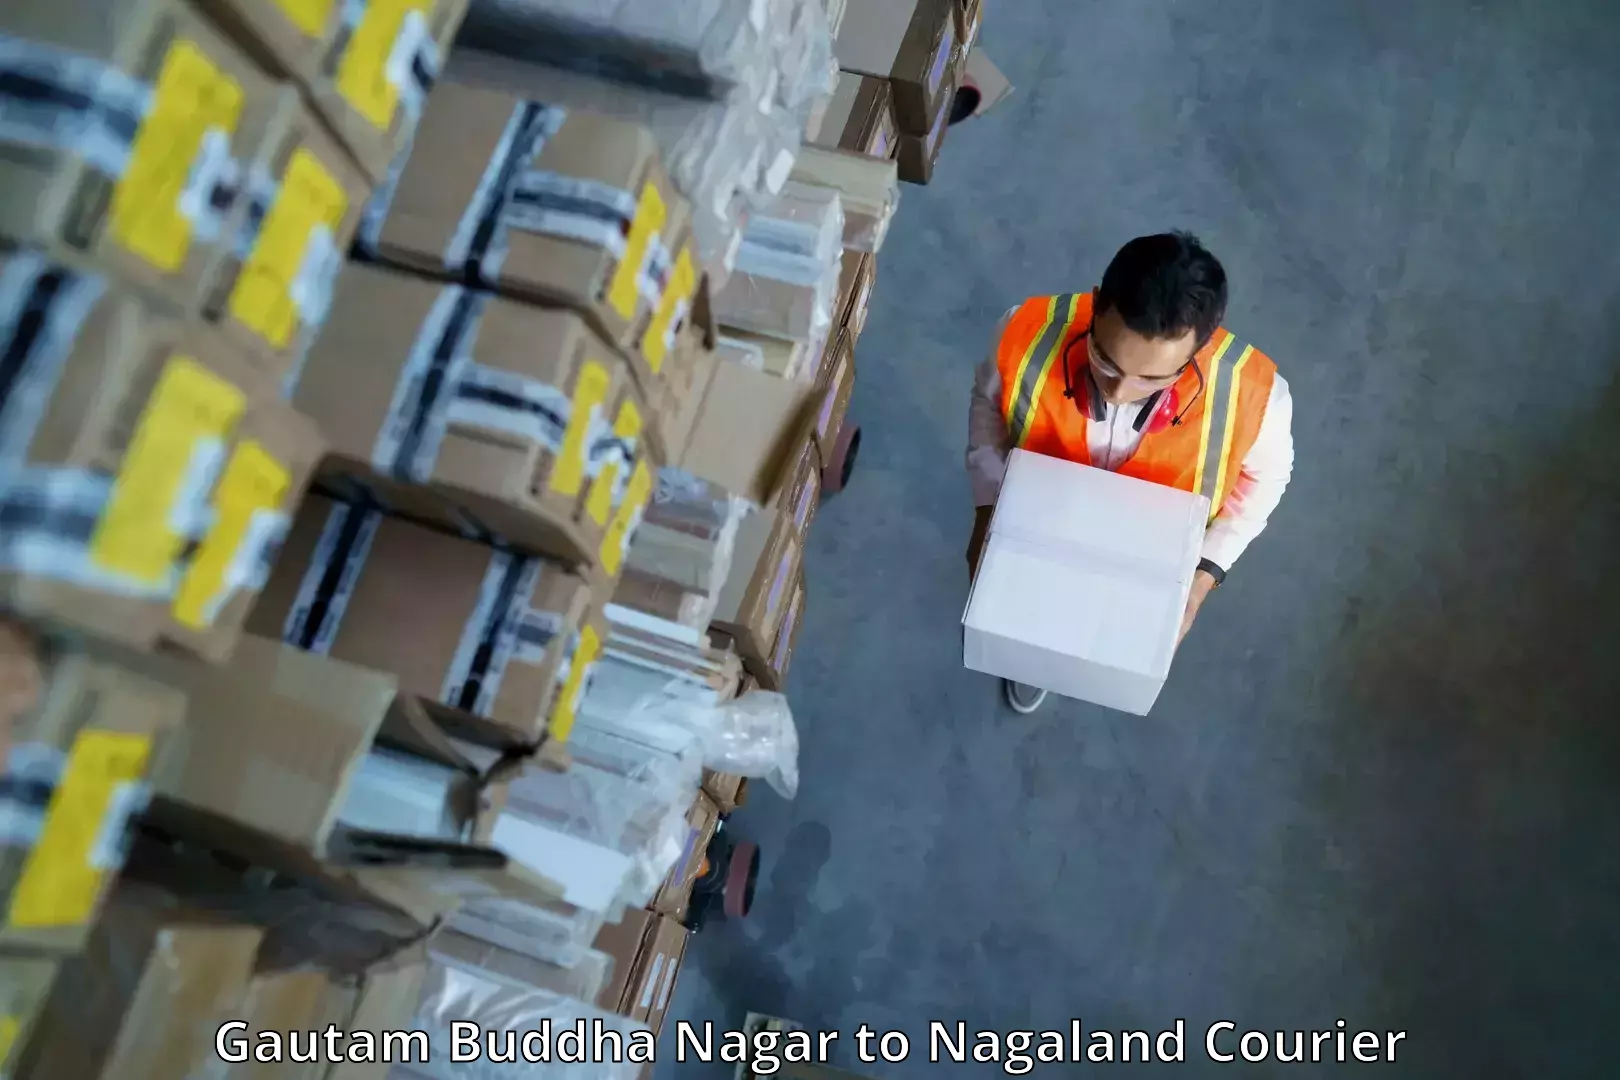 Specialized courier services Gautam Buddha Nagar to Nagaland